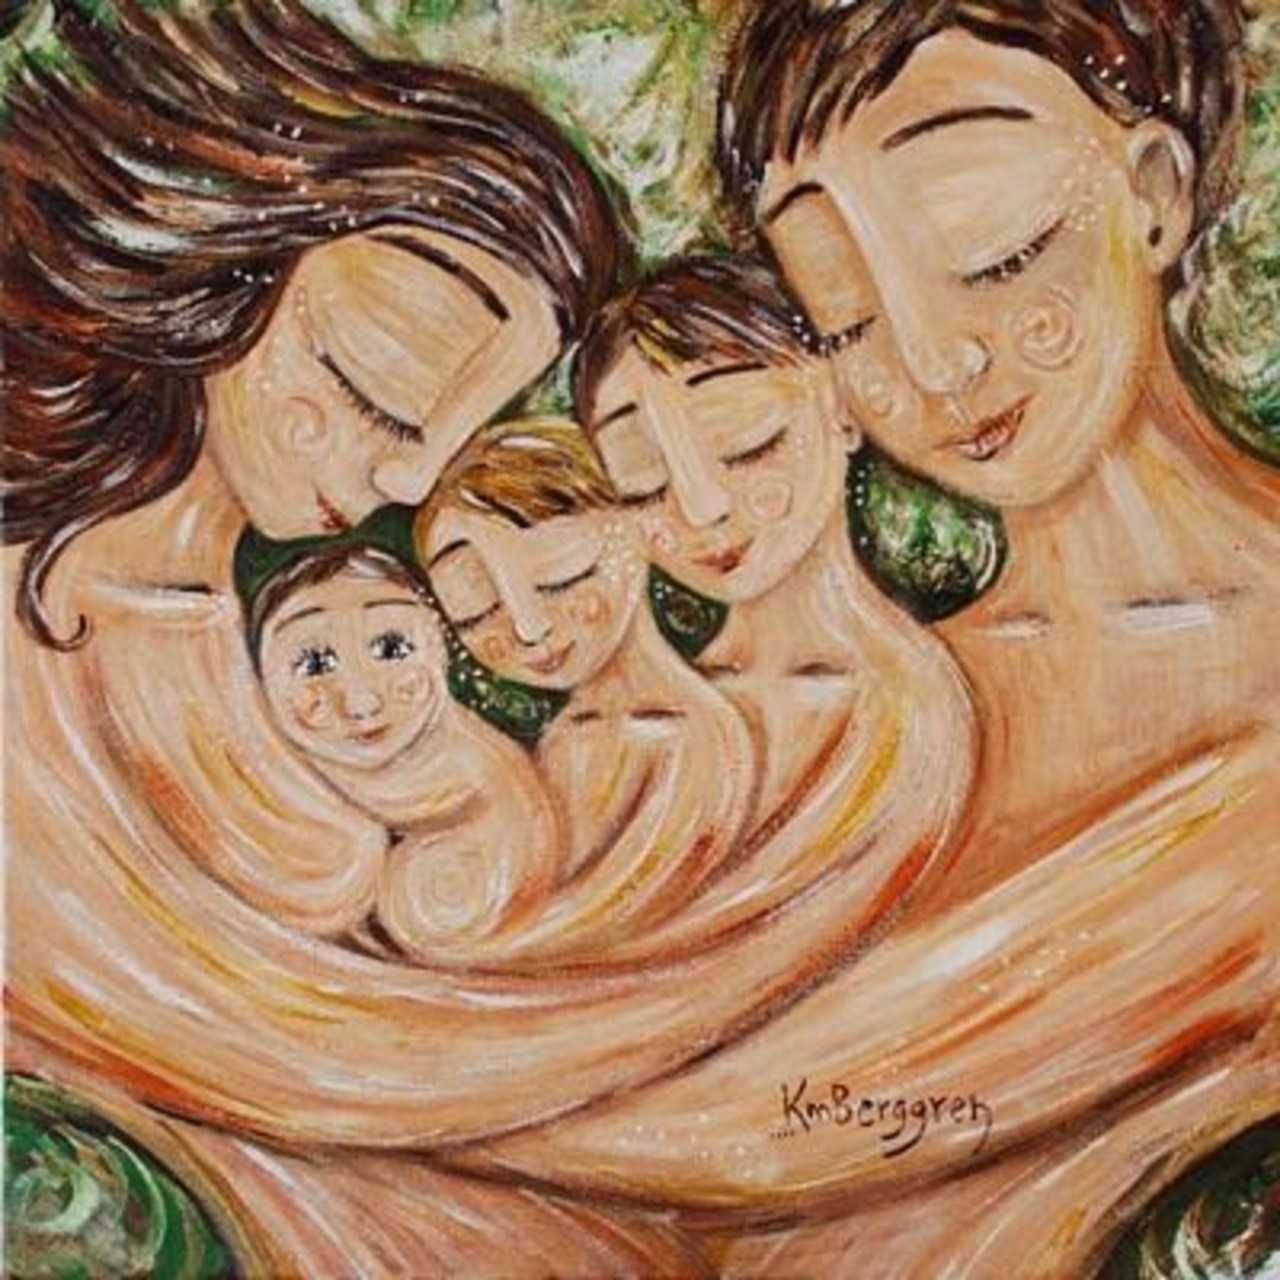 Про маму двух сыновей. Кэти Берггрен картины семья. Художник Кэти Берггрен счастливая семья. Кэти Берггрен трое детей. Кэти Берггрен картины семья трое детей.